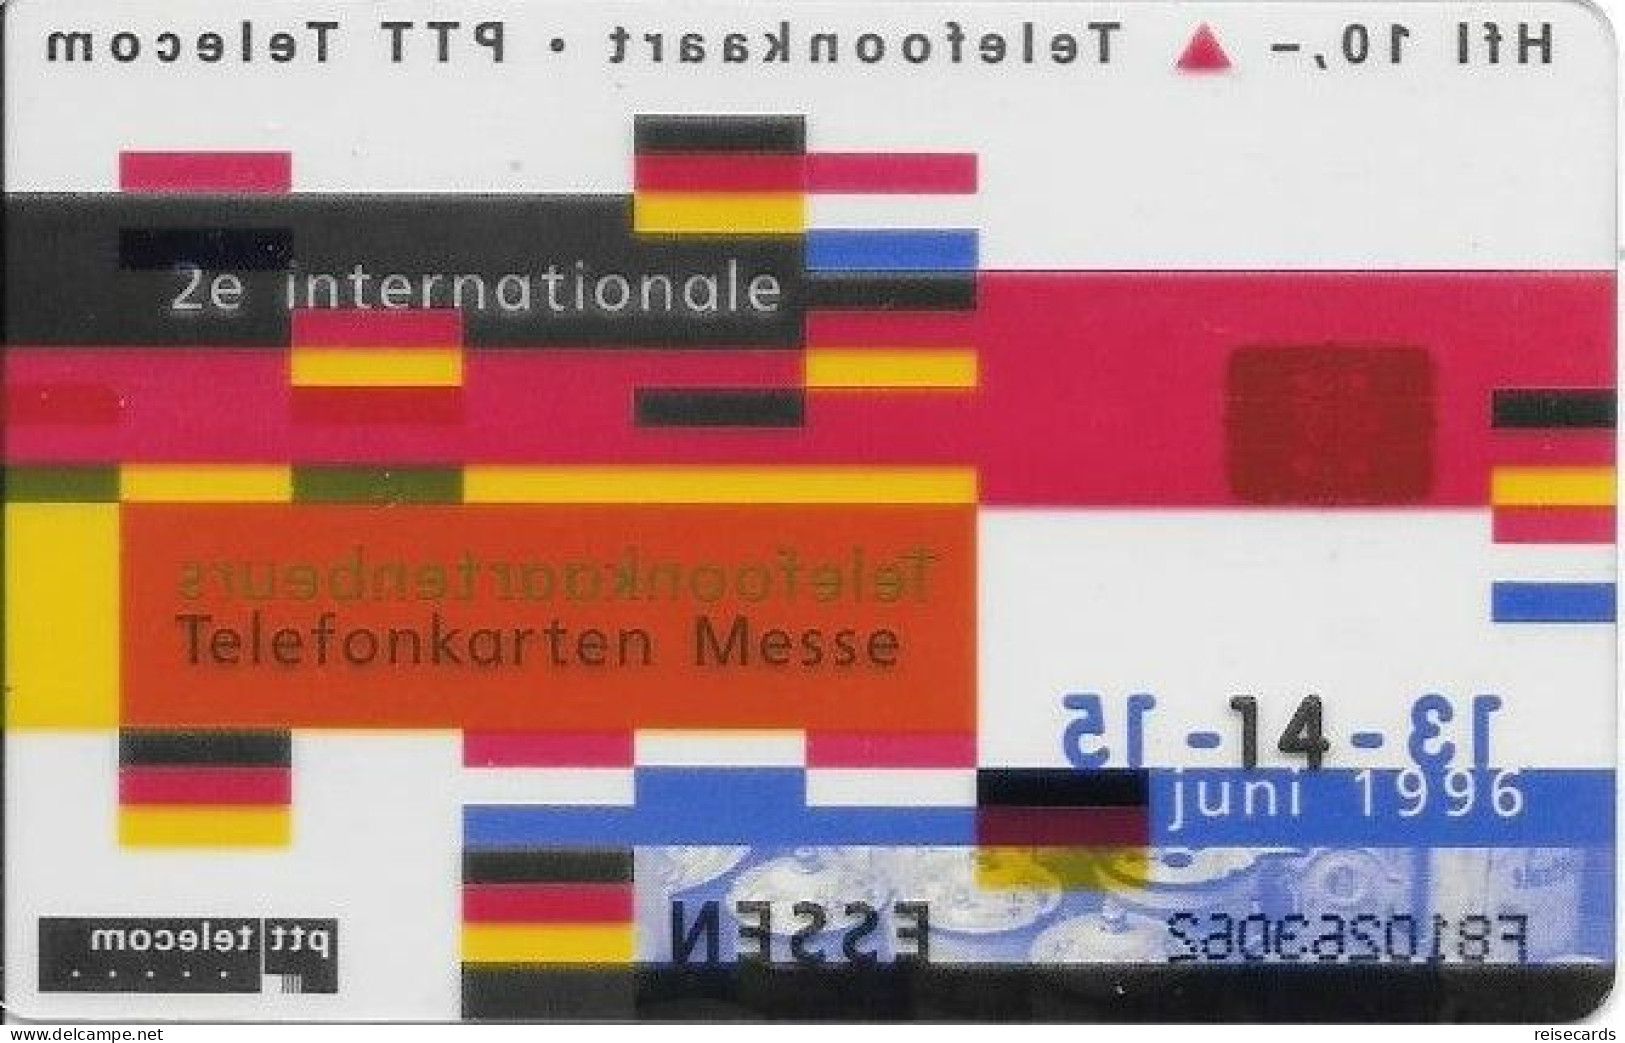 Netherlands: Ptt Telecom - 1996 Internationale Telefonkaartenbeurs Essen. Mint, Transparent - öffentlich